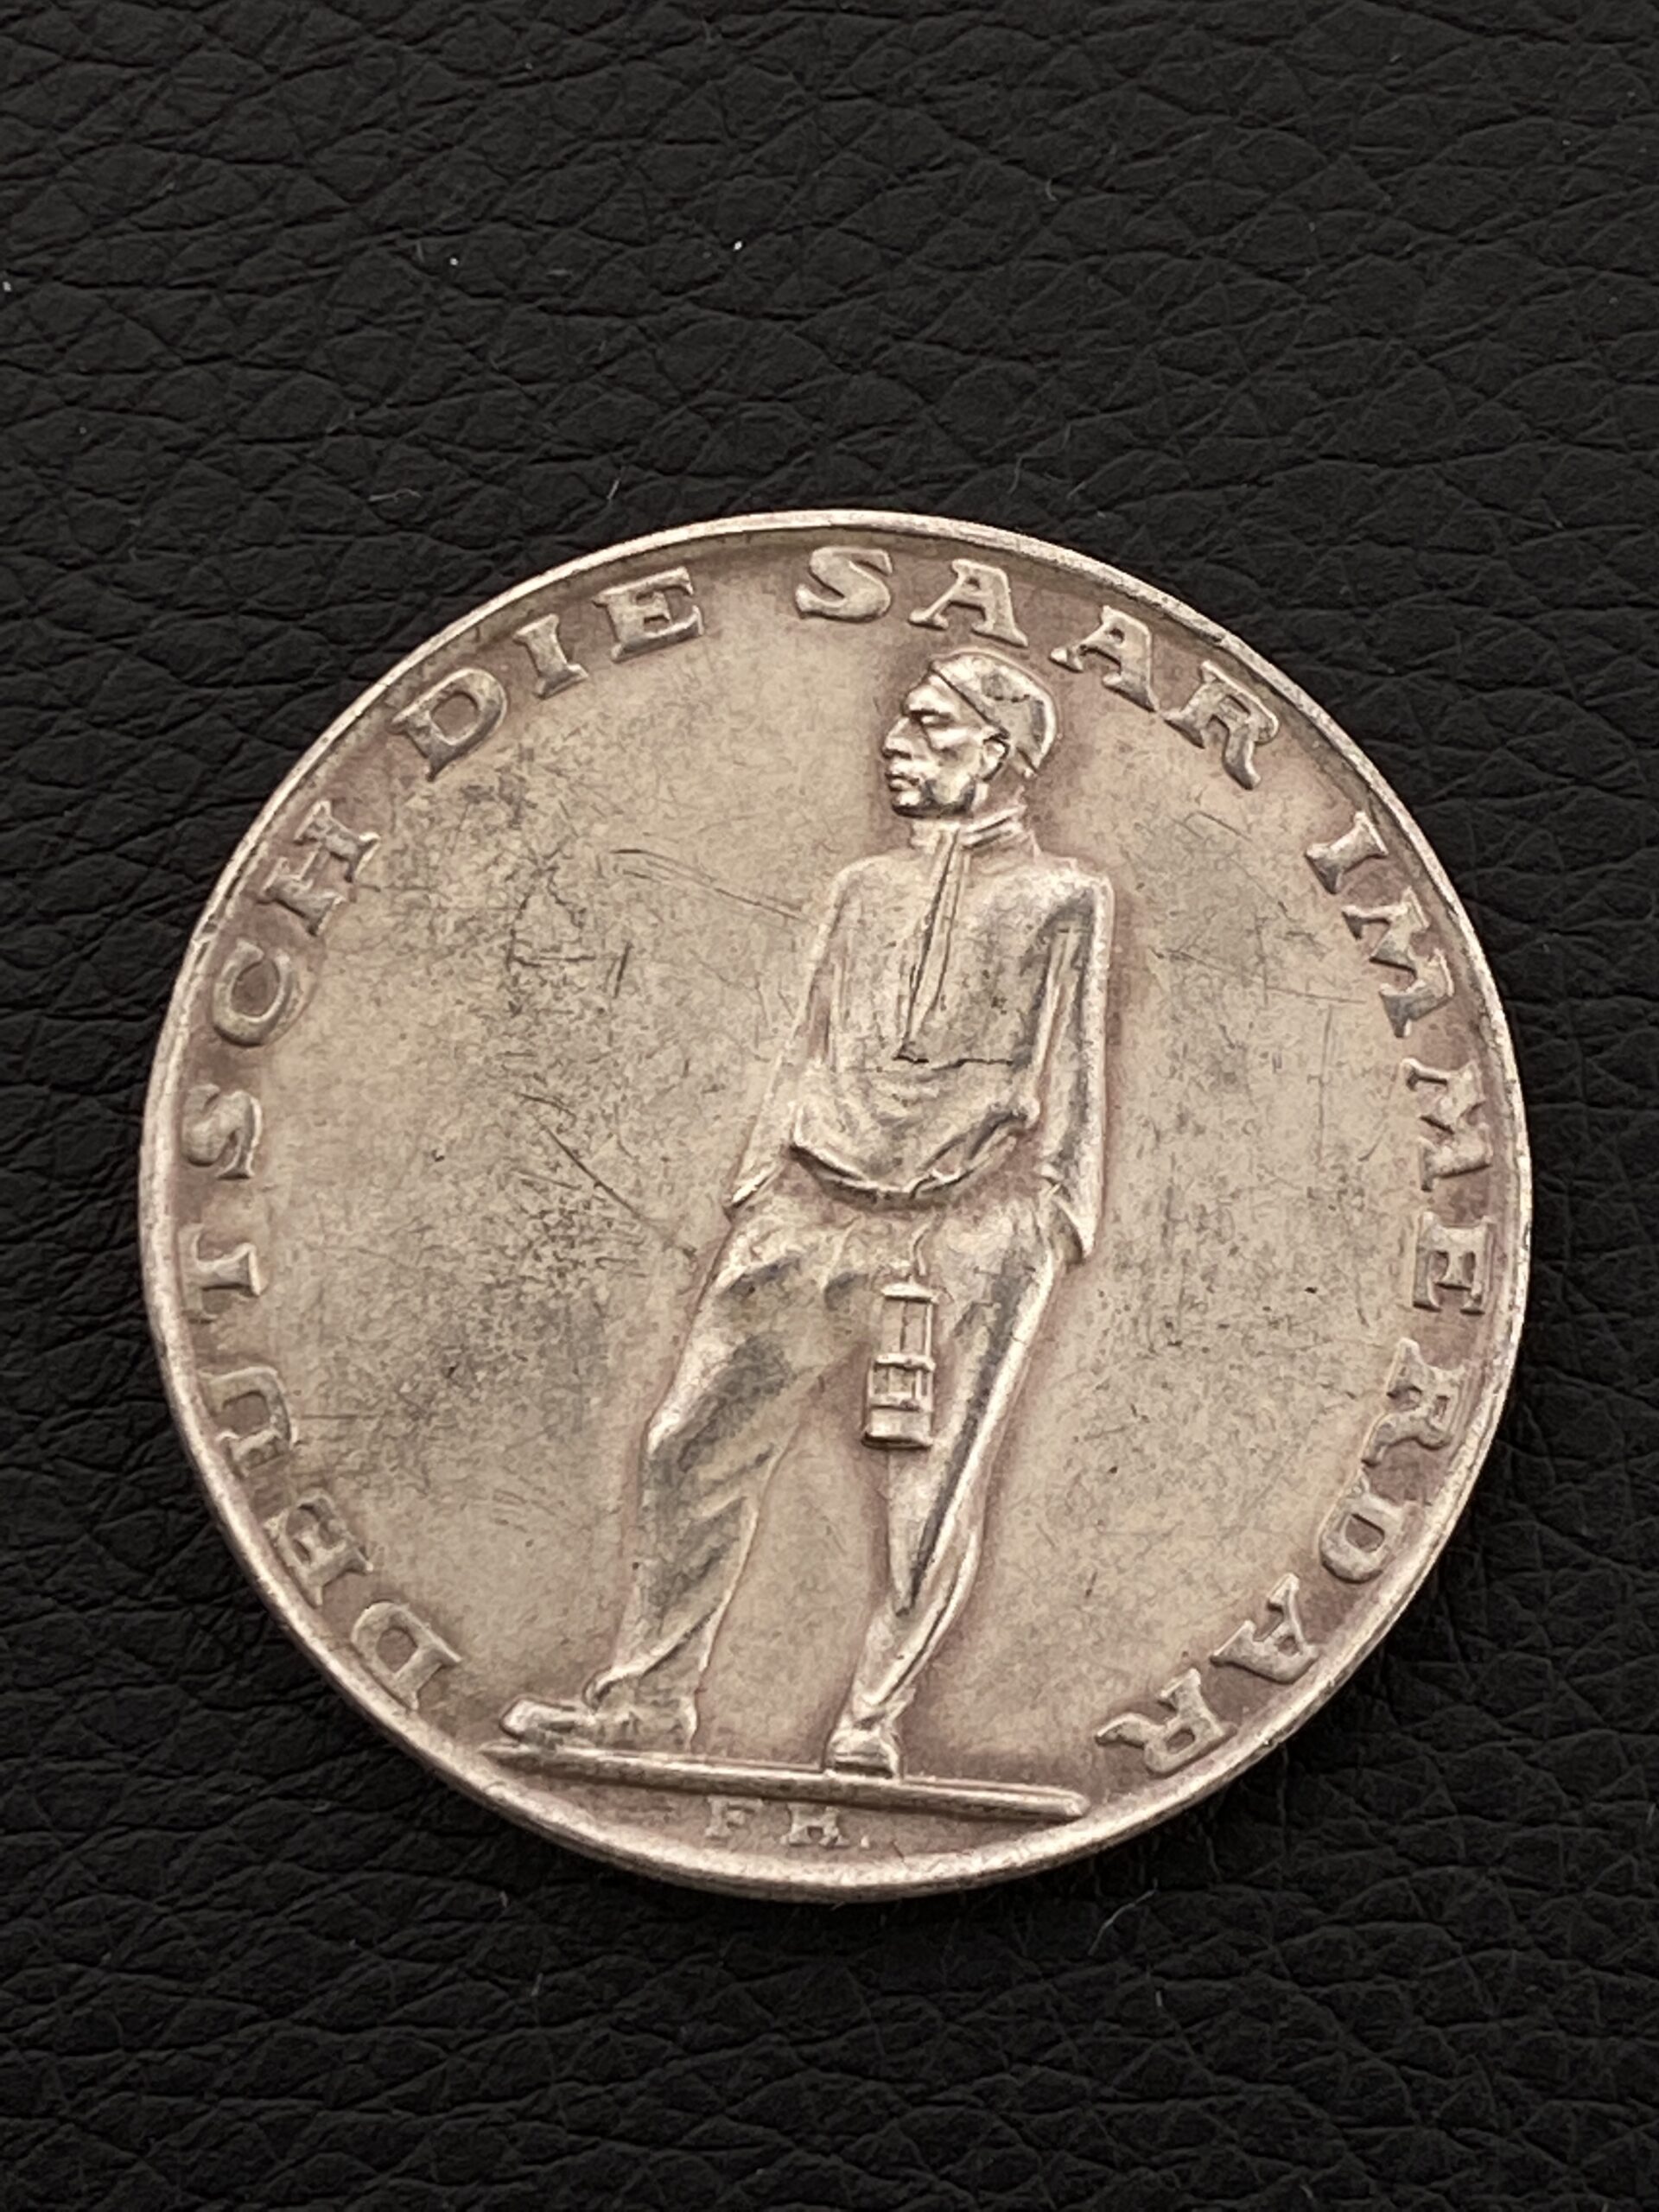 Медаль «В память о плебисците о присоединении Саара» 1935. Серебро, диаметр 36 мм.